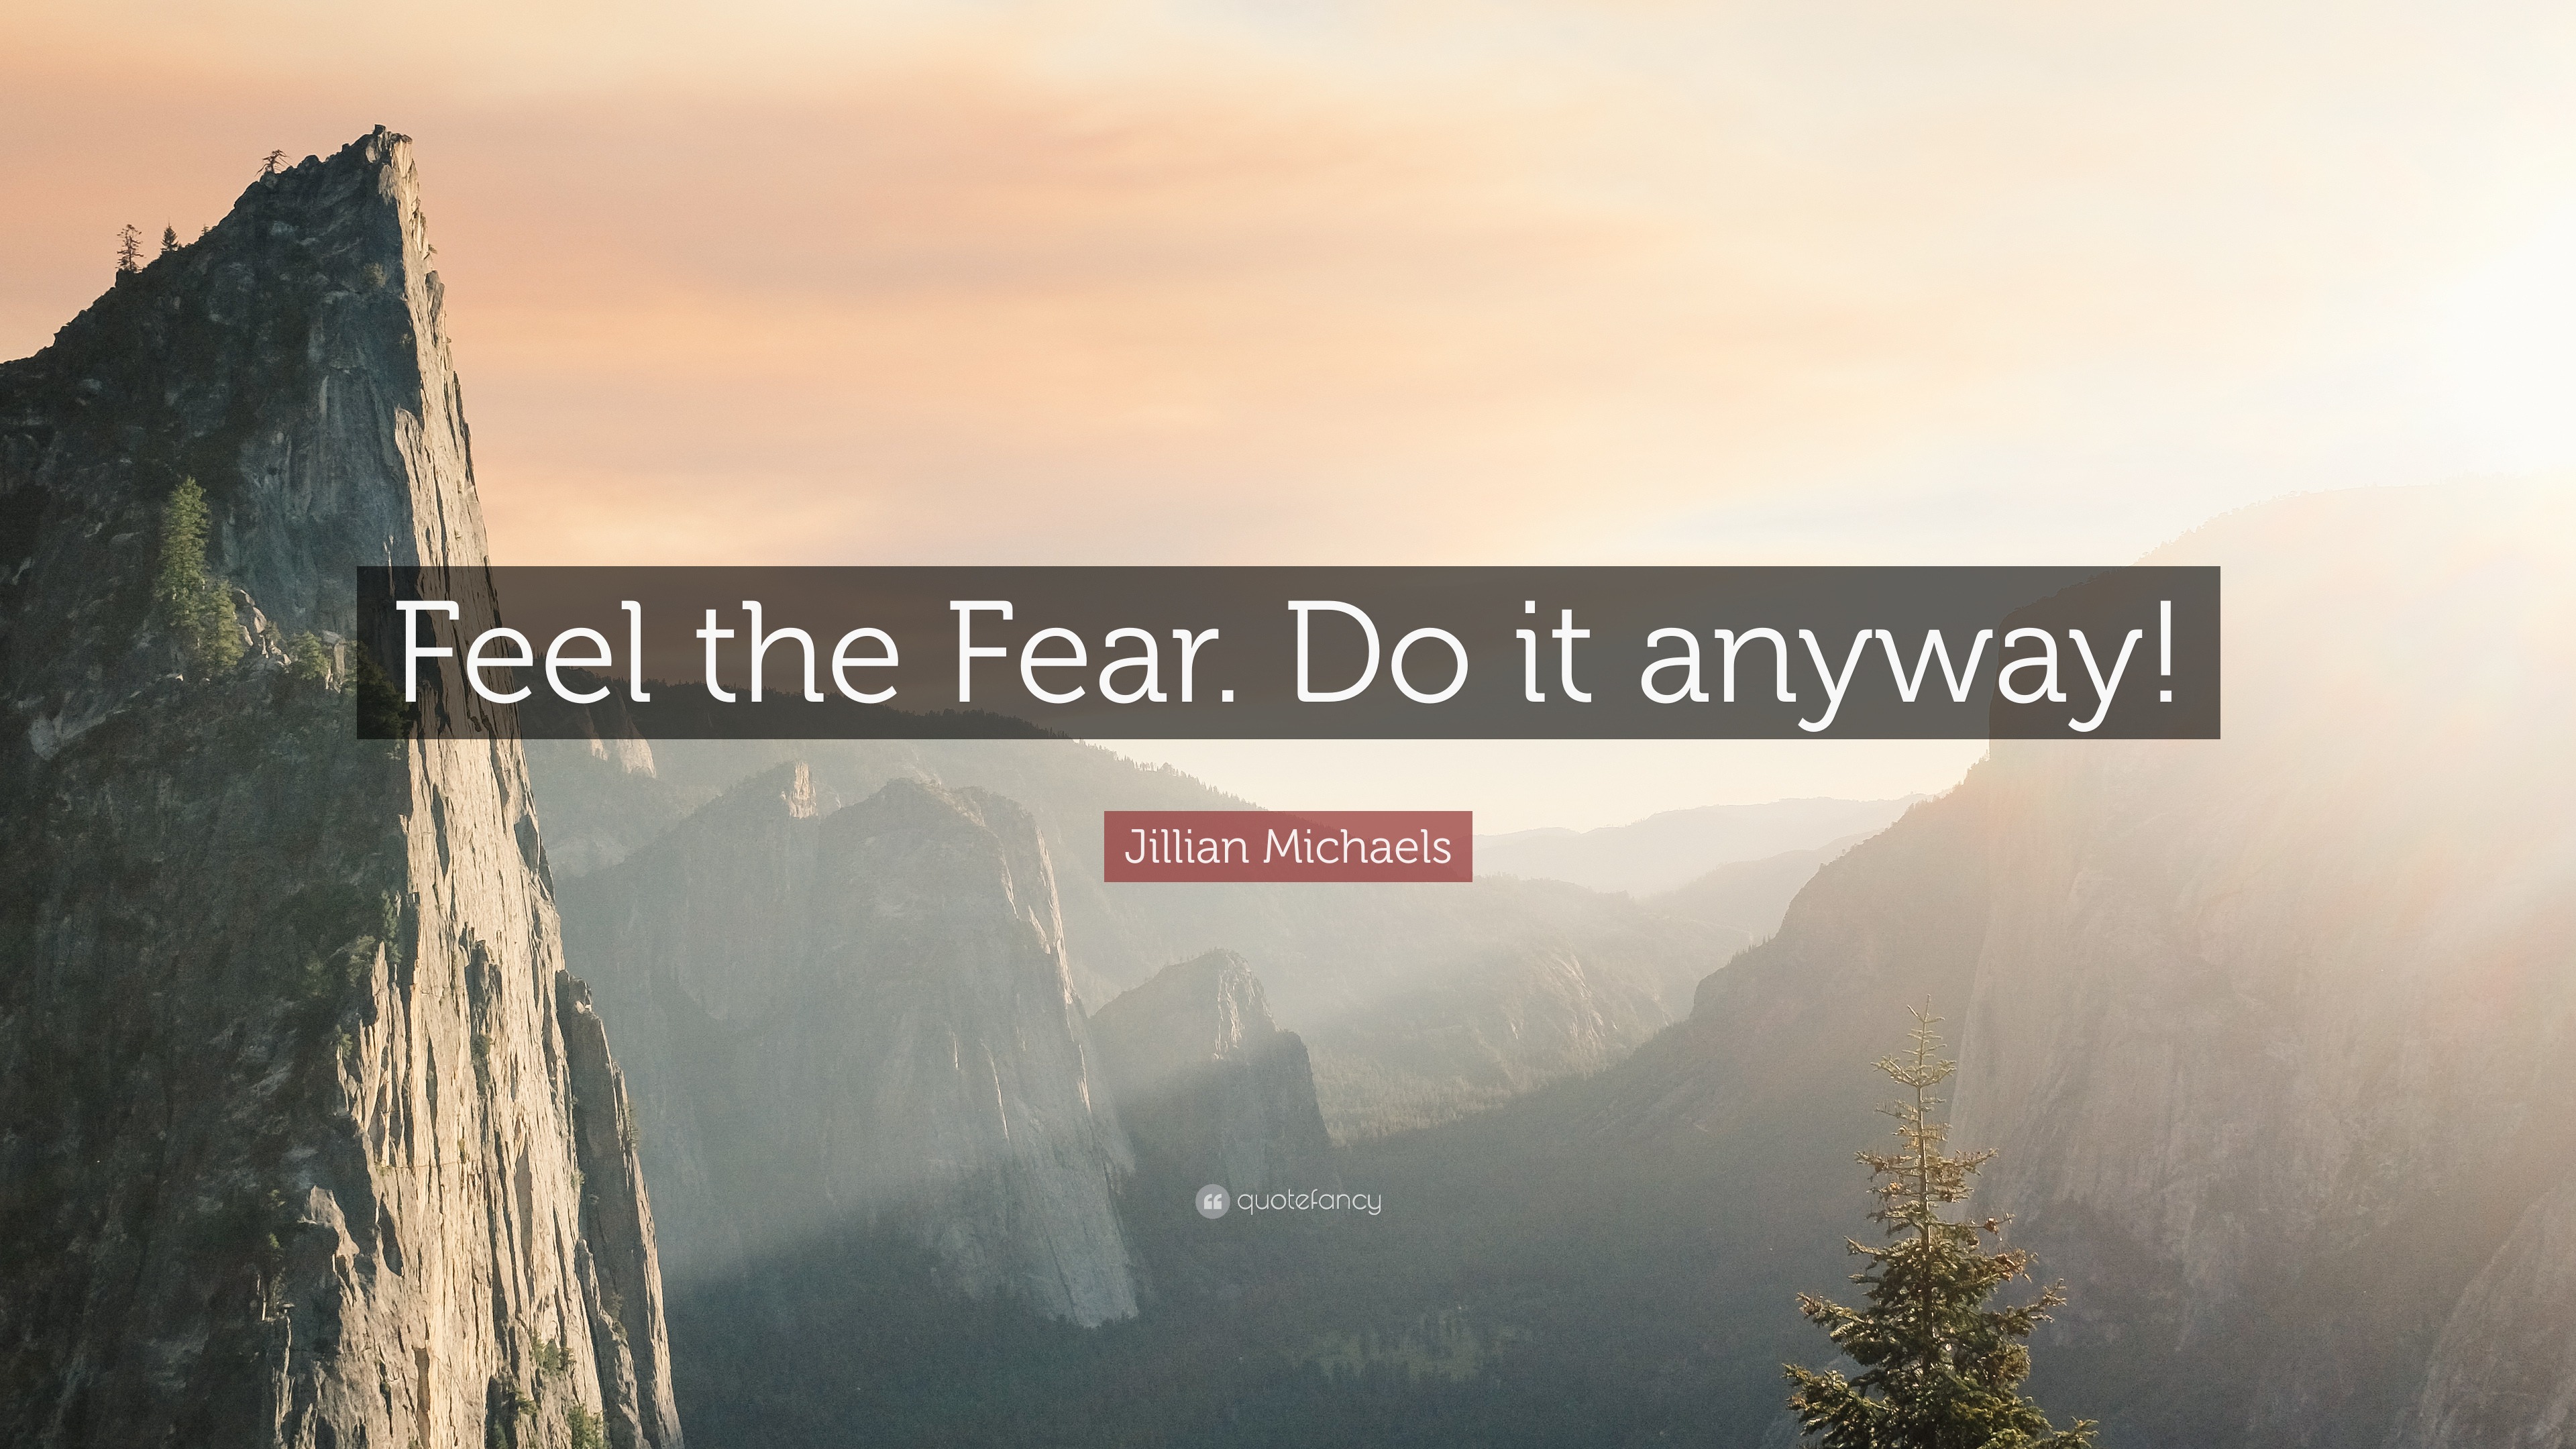 Jillian Michaels Quote: “Feel the Fear. Do it anyway!”